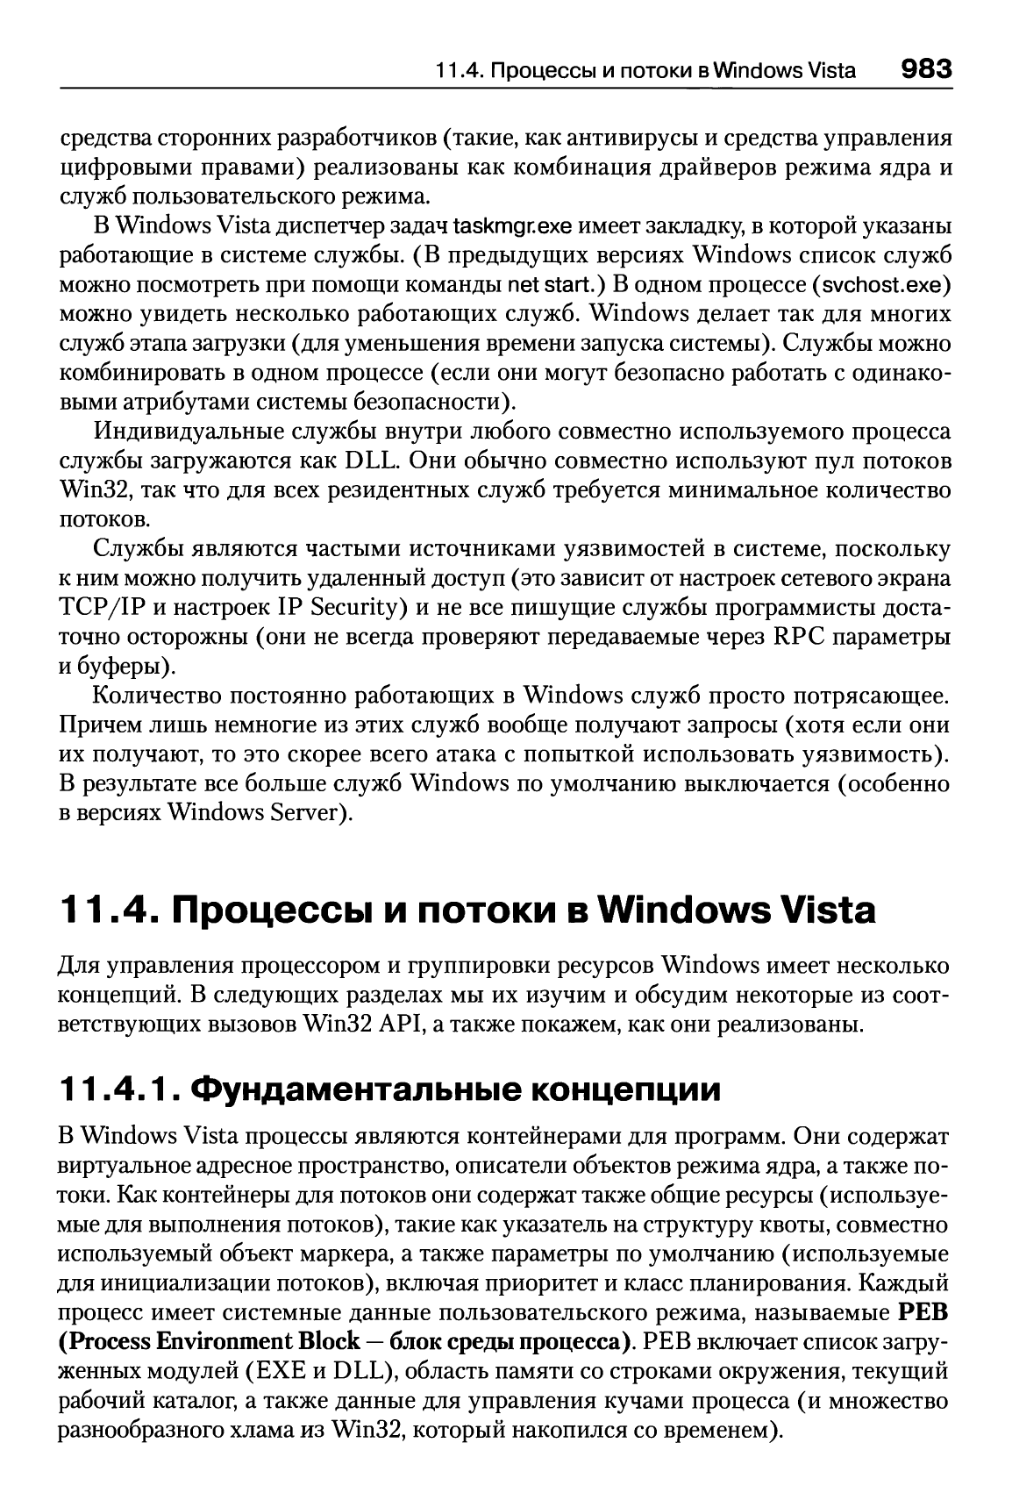 11.4. Процессы и потоки в Windows Vista